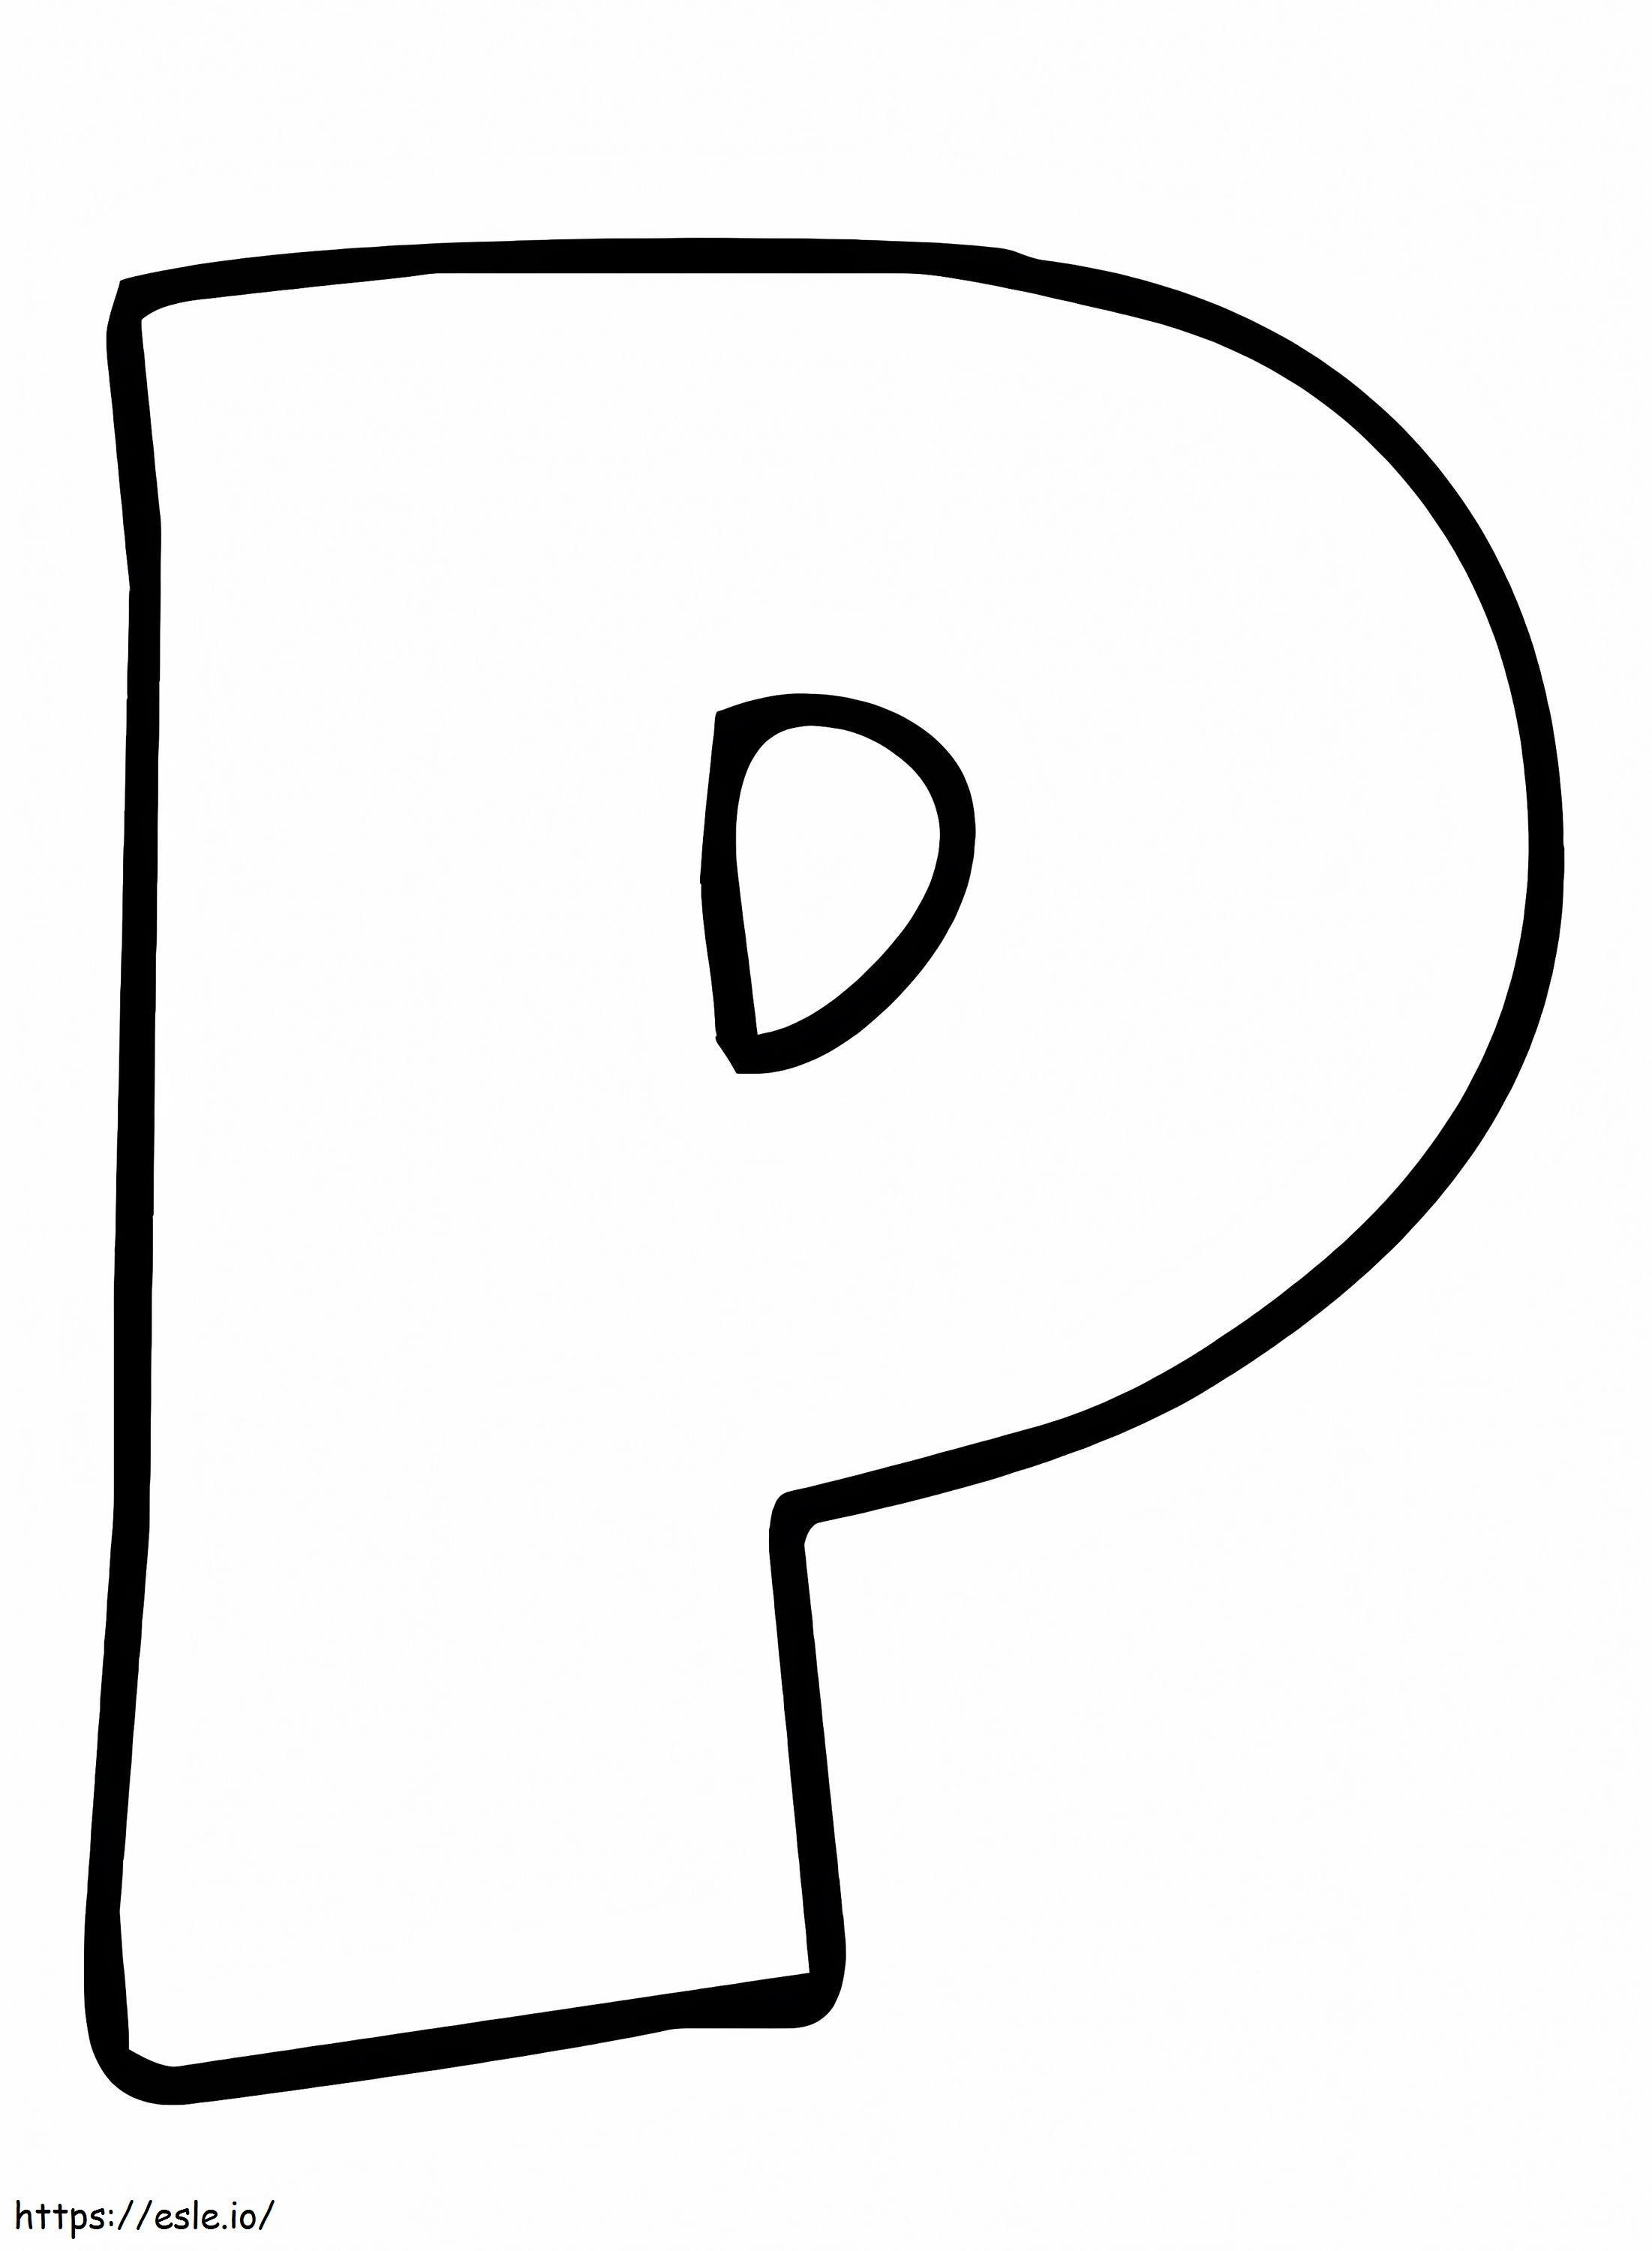 Letra simple P para colorear